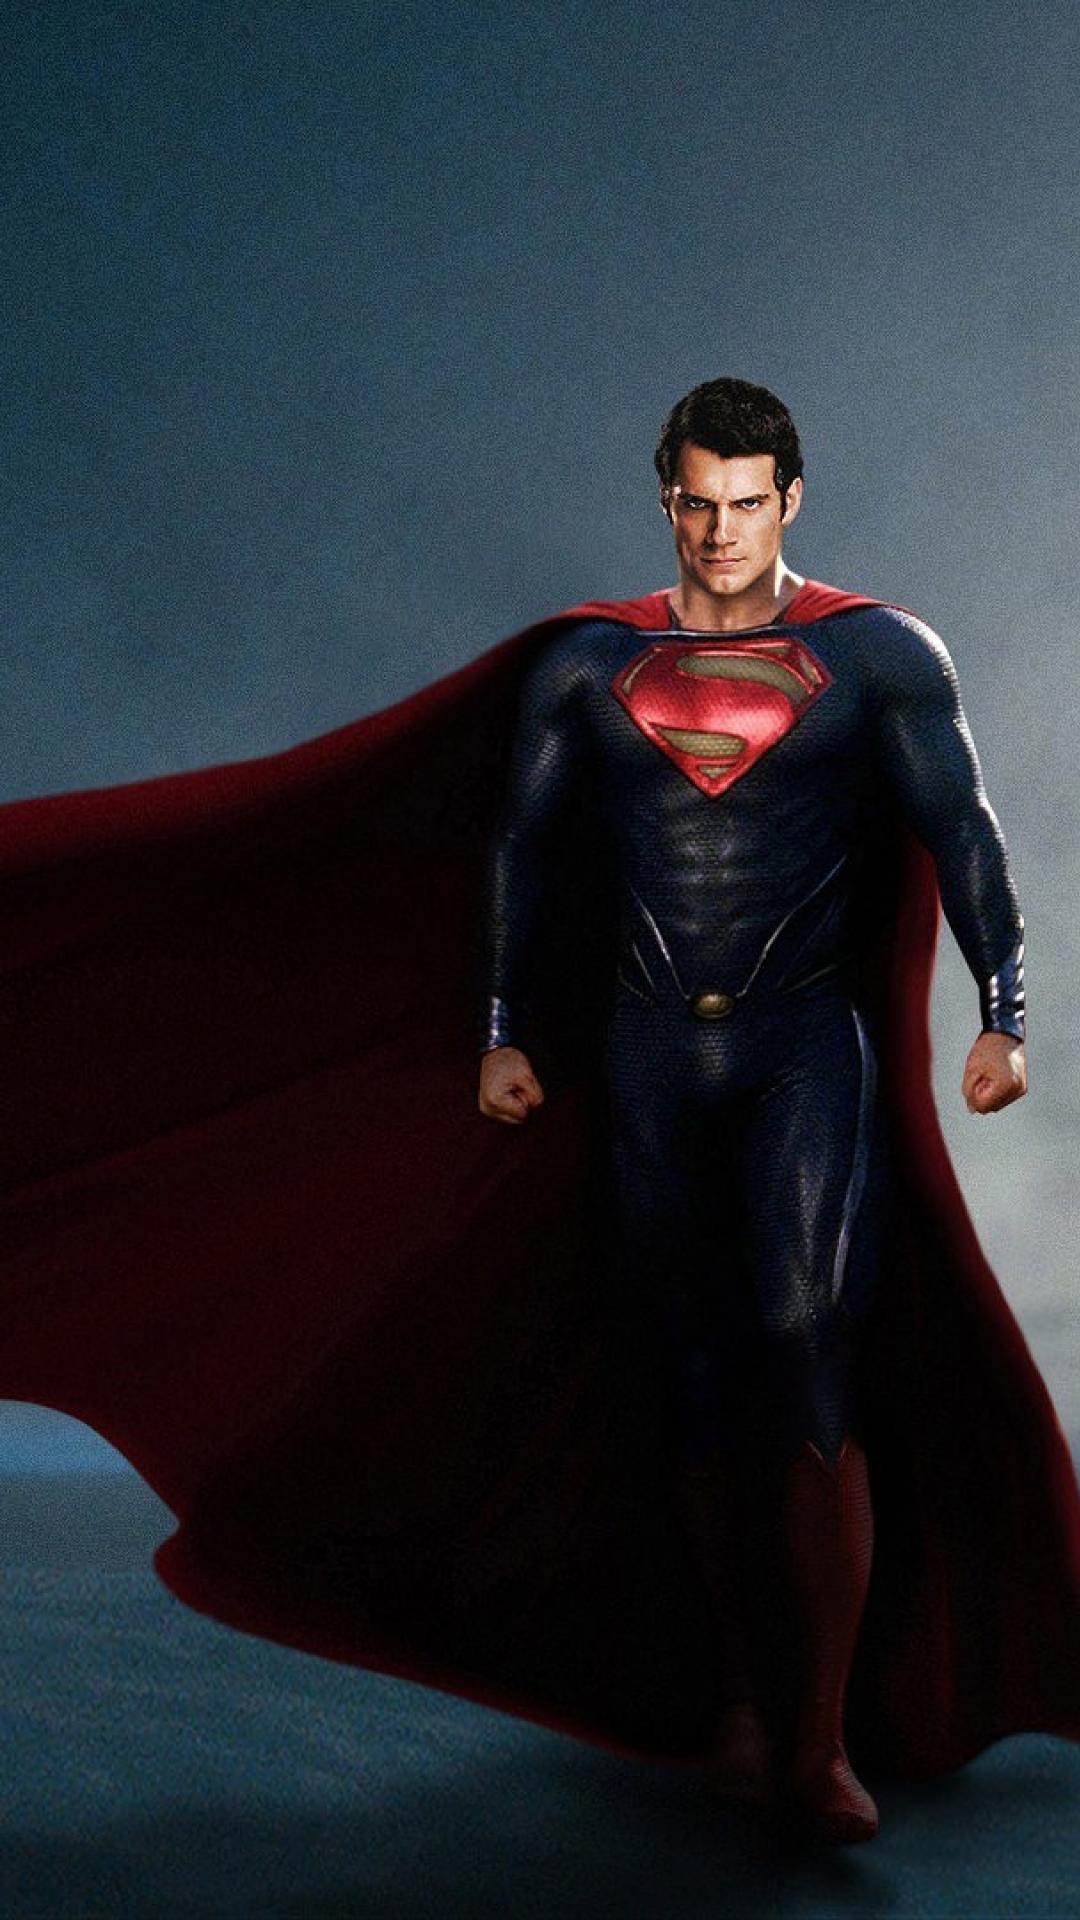 スーパーマン壁紙hdアンドロイド用,スーパーマン,スーパーヒーロー,架空の人物,バットマン,正義リーグ